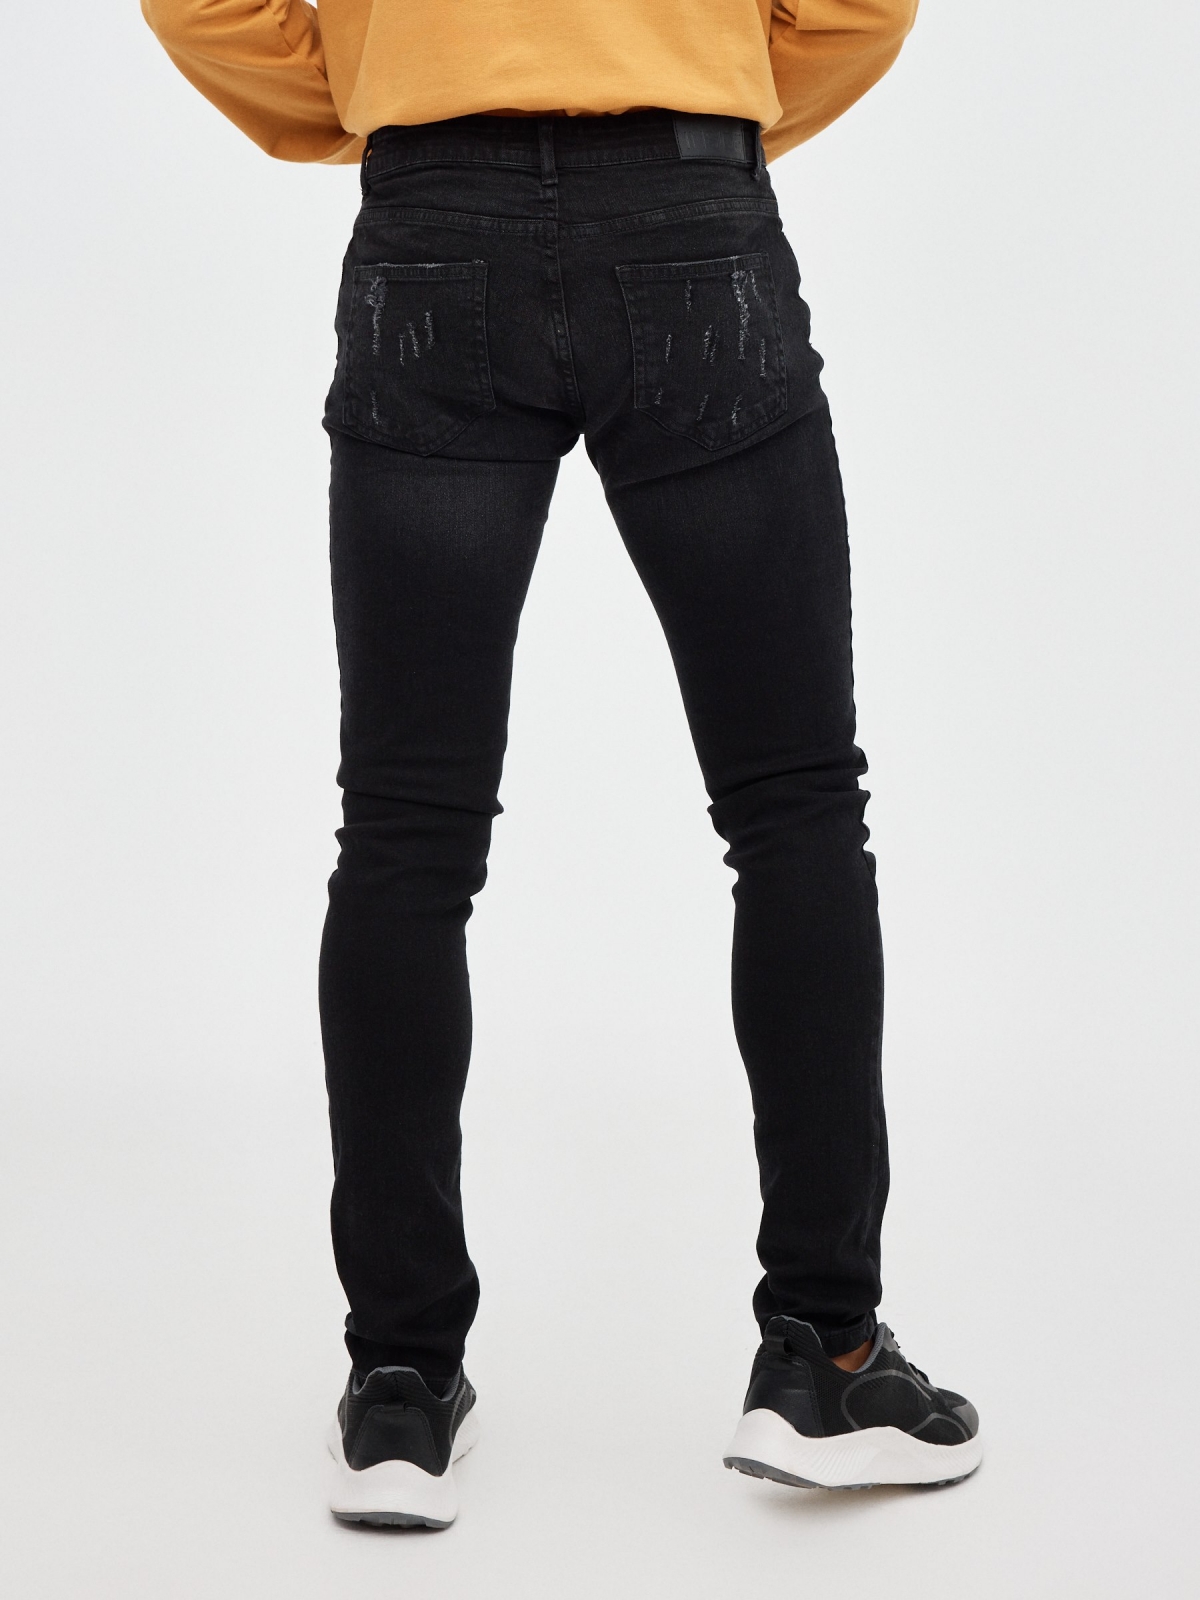 Super slim basic jeans black middle back view